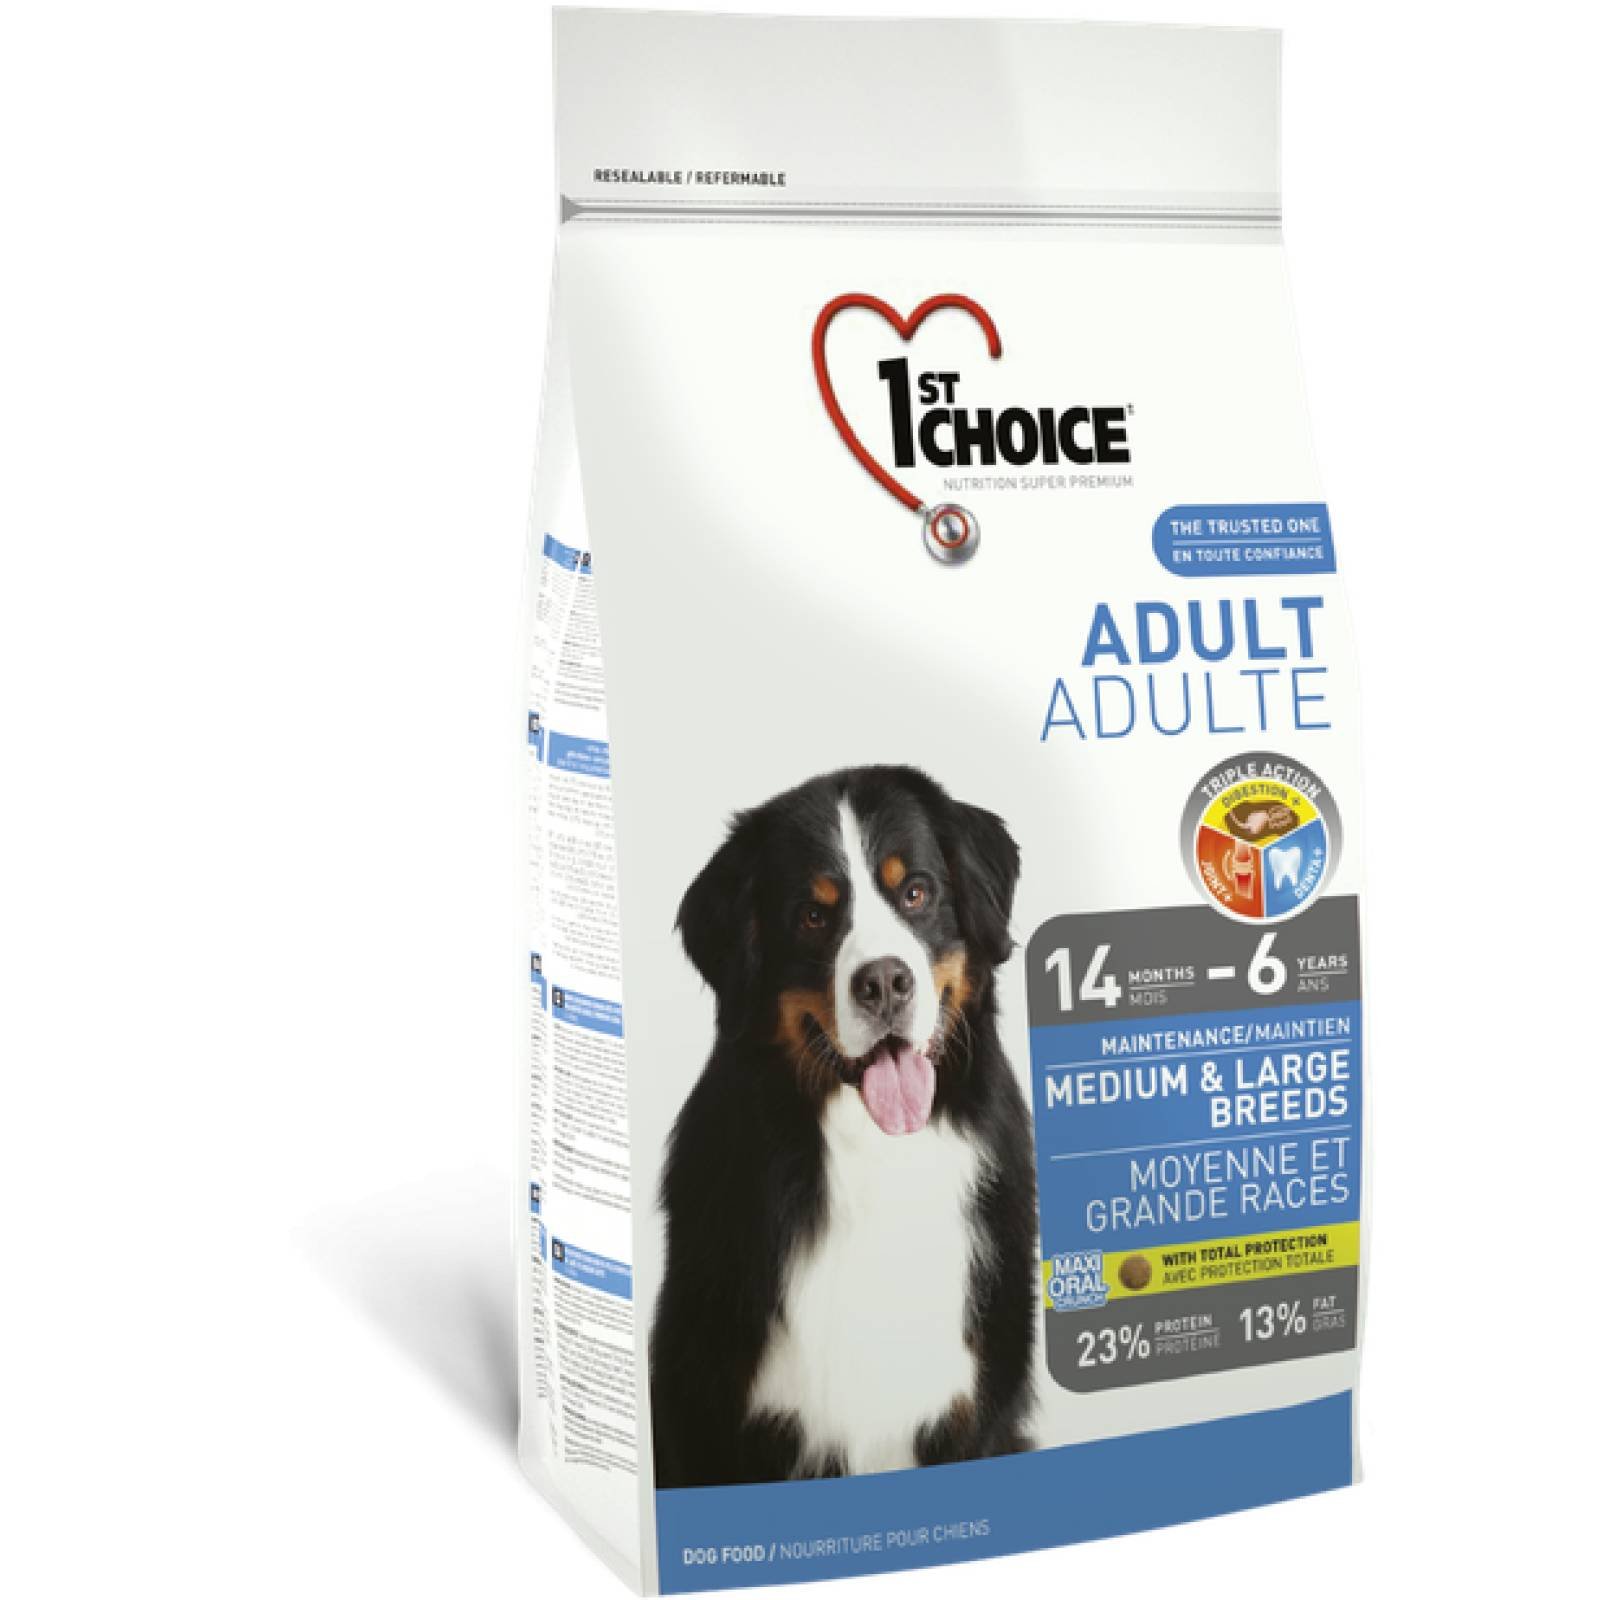 1ST Choice Alimento para Perro Adulto Raza Mediana y Grande Fórmula de pollo Edad: 14 meses  a 6 años 15 kg